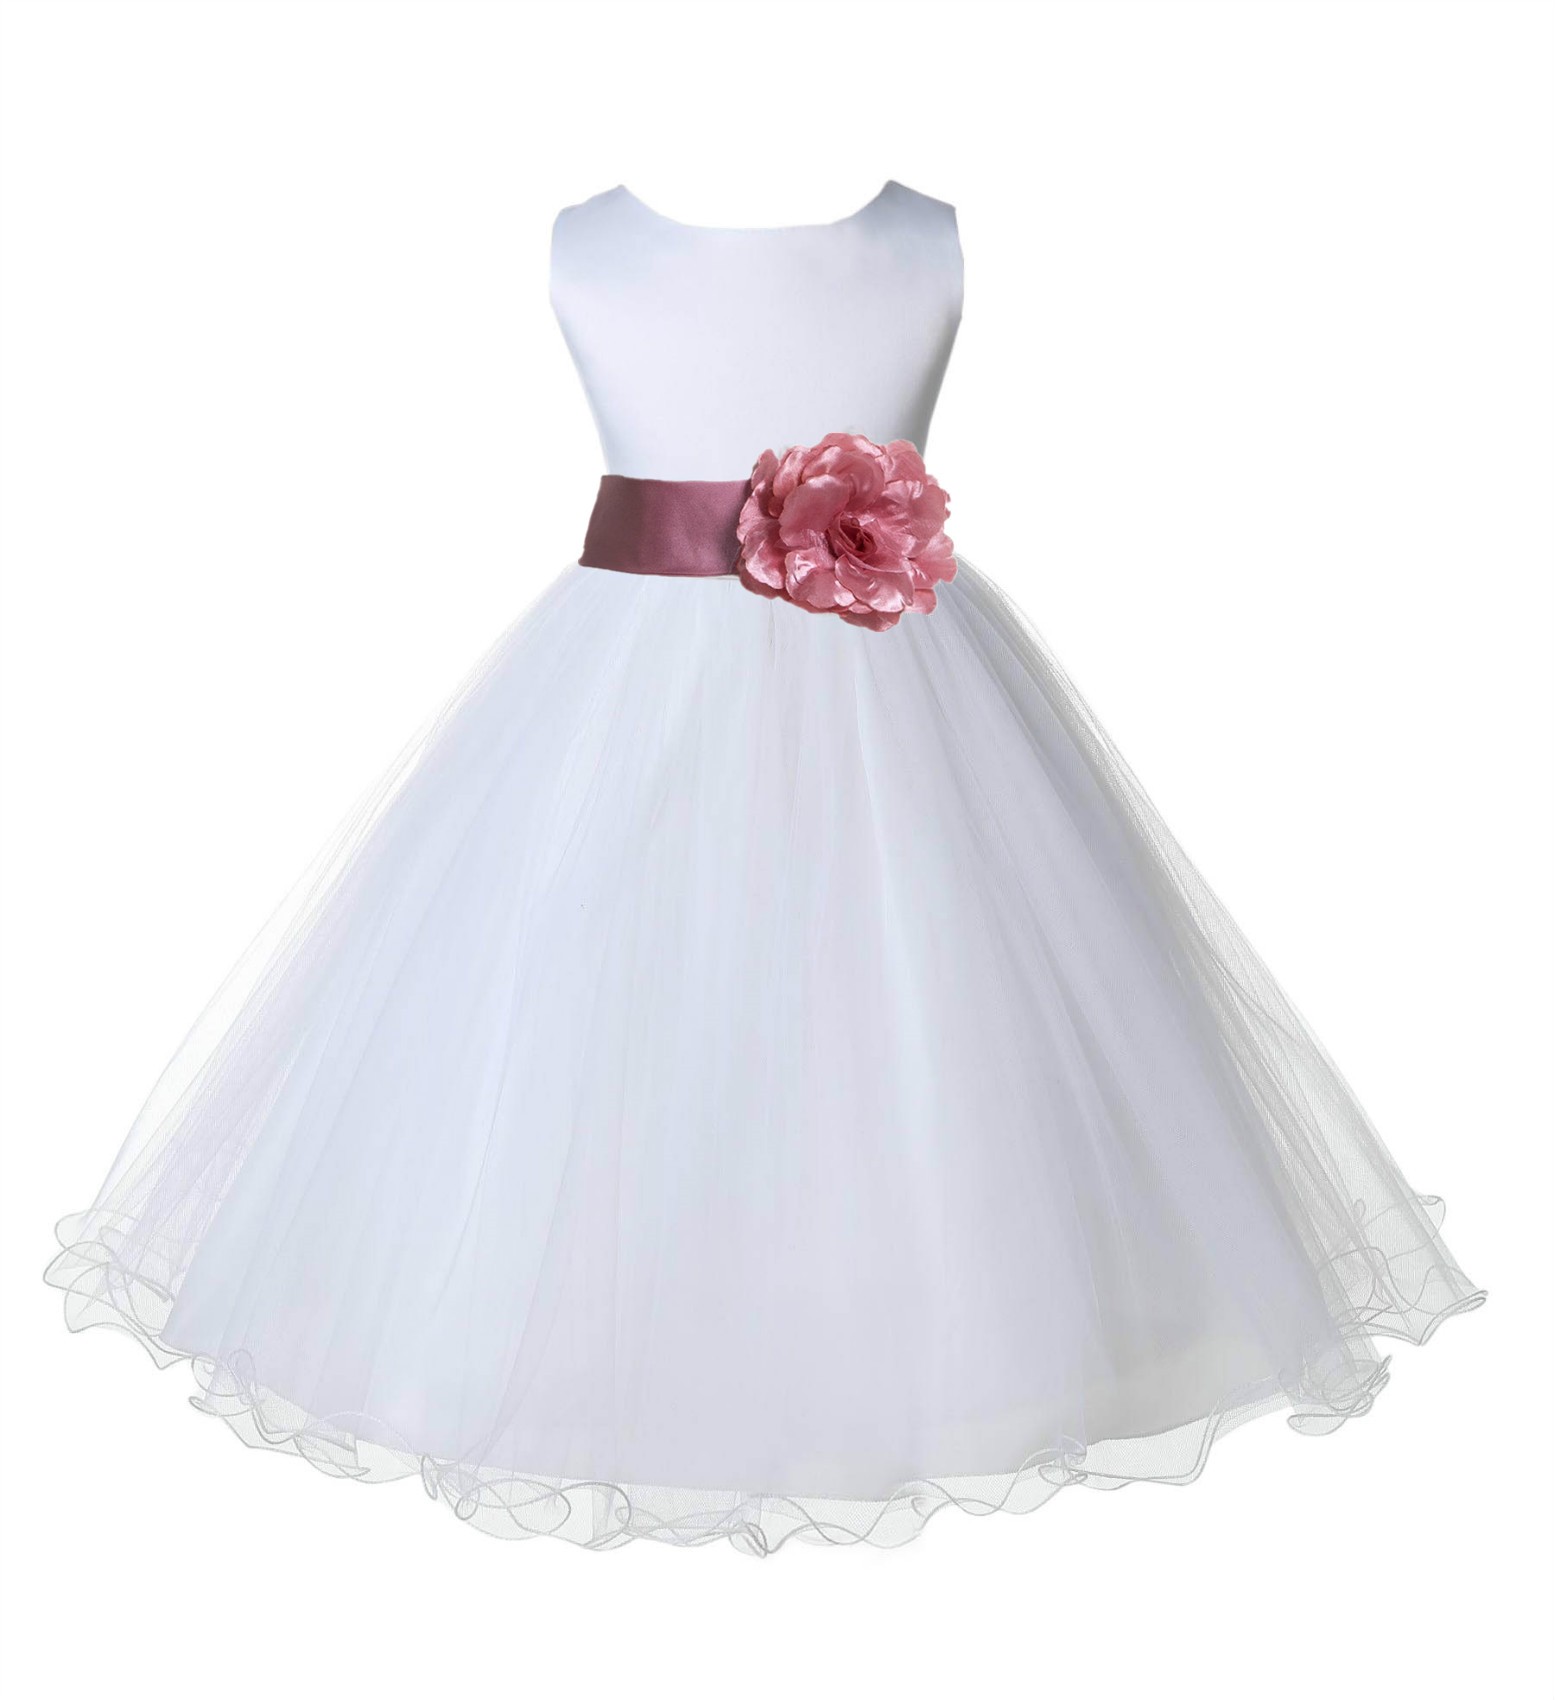 White/Dusty Rose Tulle Rattail Edge Flower Girl Dress Wedding Bridal 829S